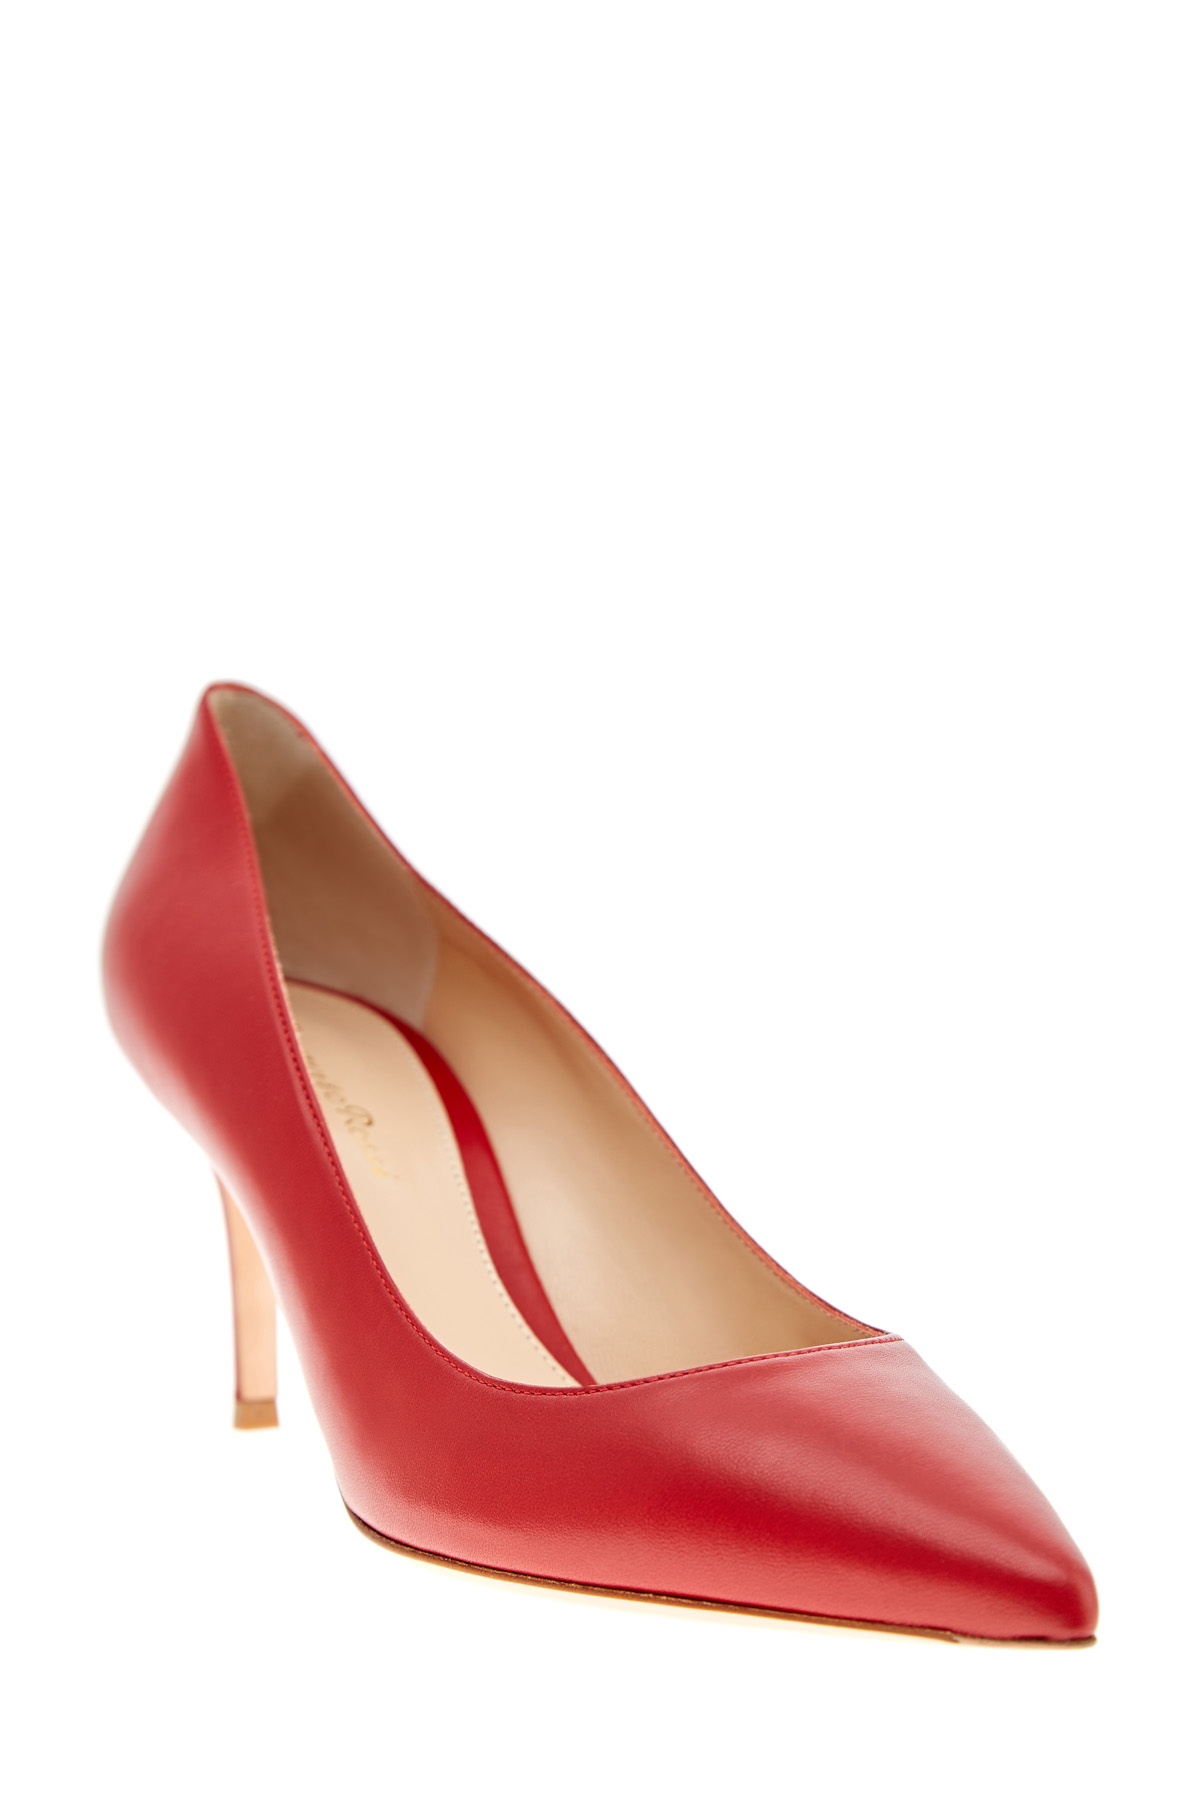 Алые туфли-лодочки из телячьей кожи GIANVITO ROSSI, цвет красный, размер 37.5 - фото 3